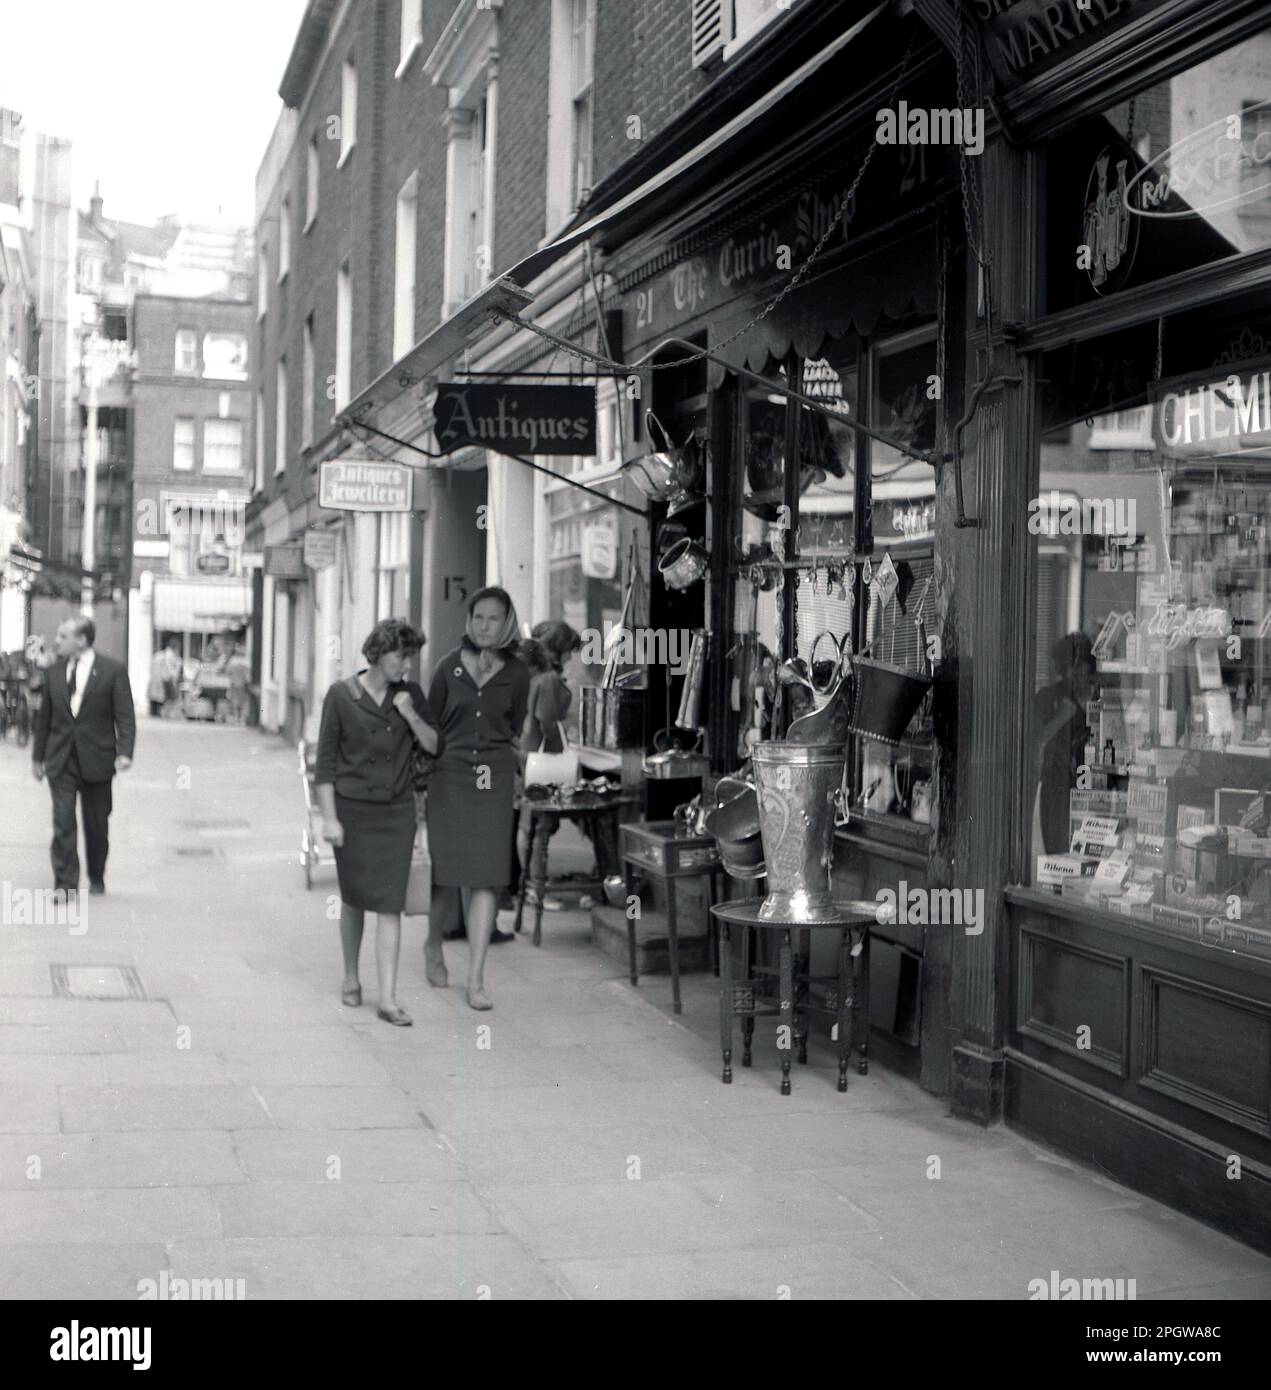 1960s, historique, deux dames se promenant devant un magasin d'antiquités, le Curio Shop, dans un passage latéral, Londres, Angleterre, Royaume-Uni. Banque D'Images